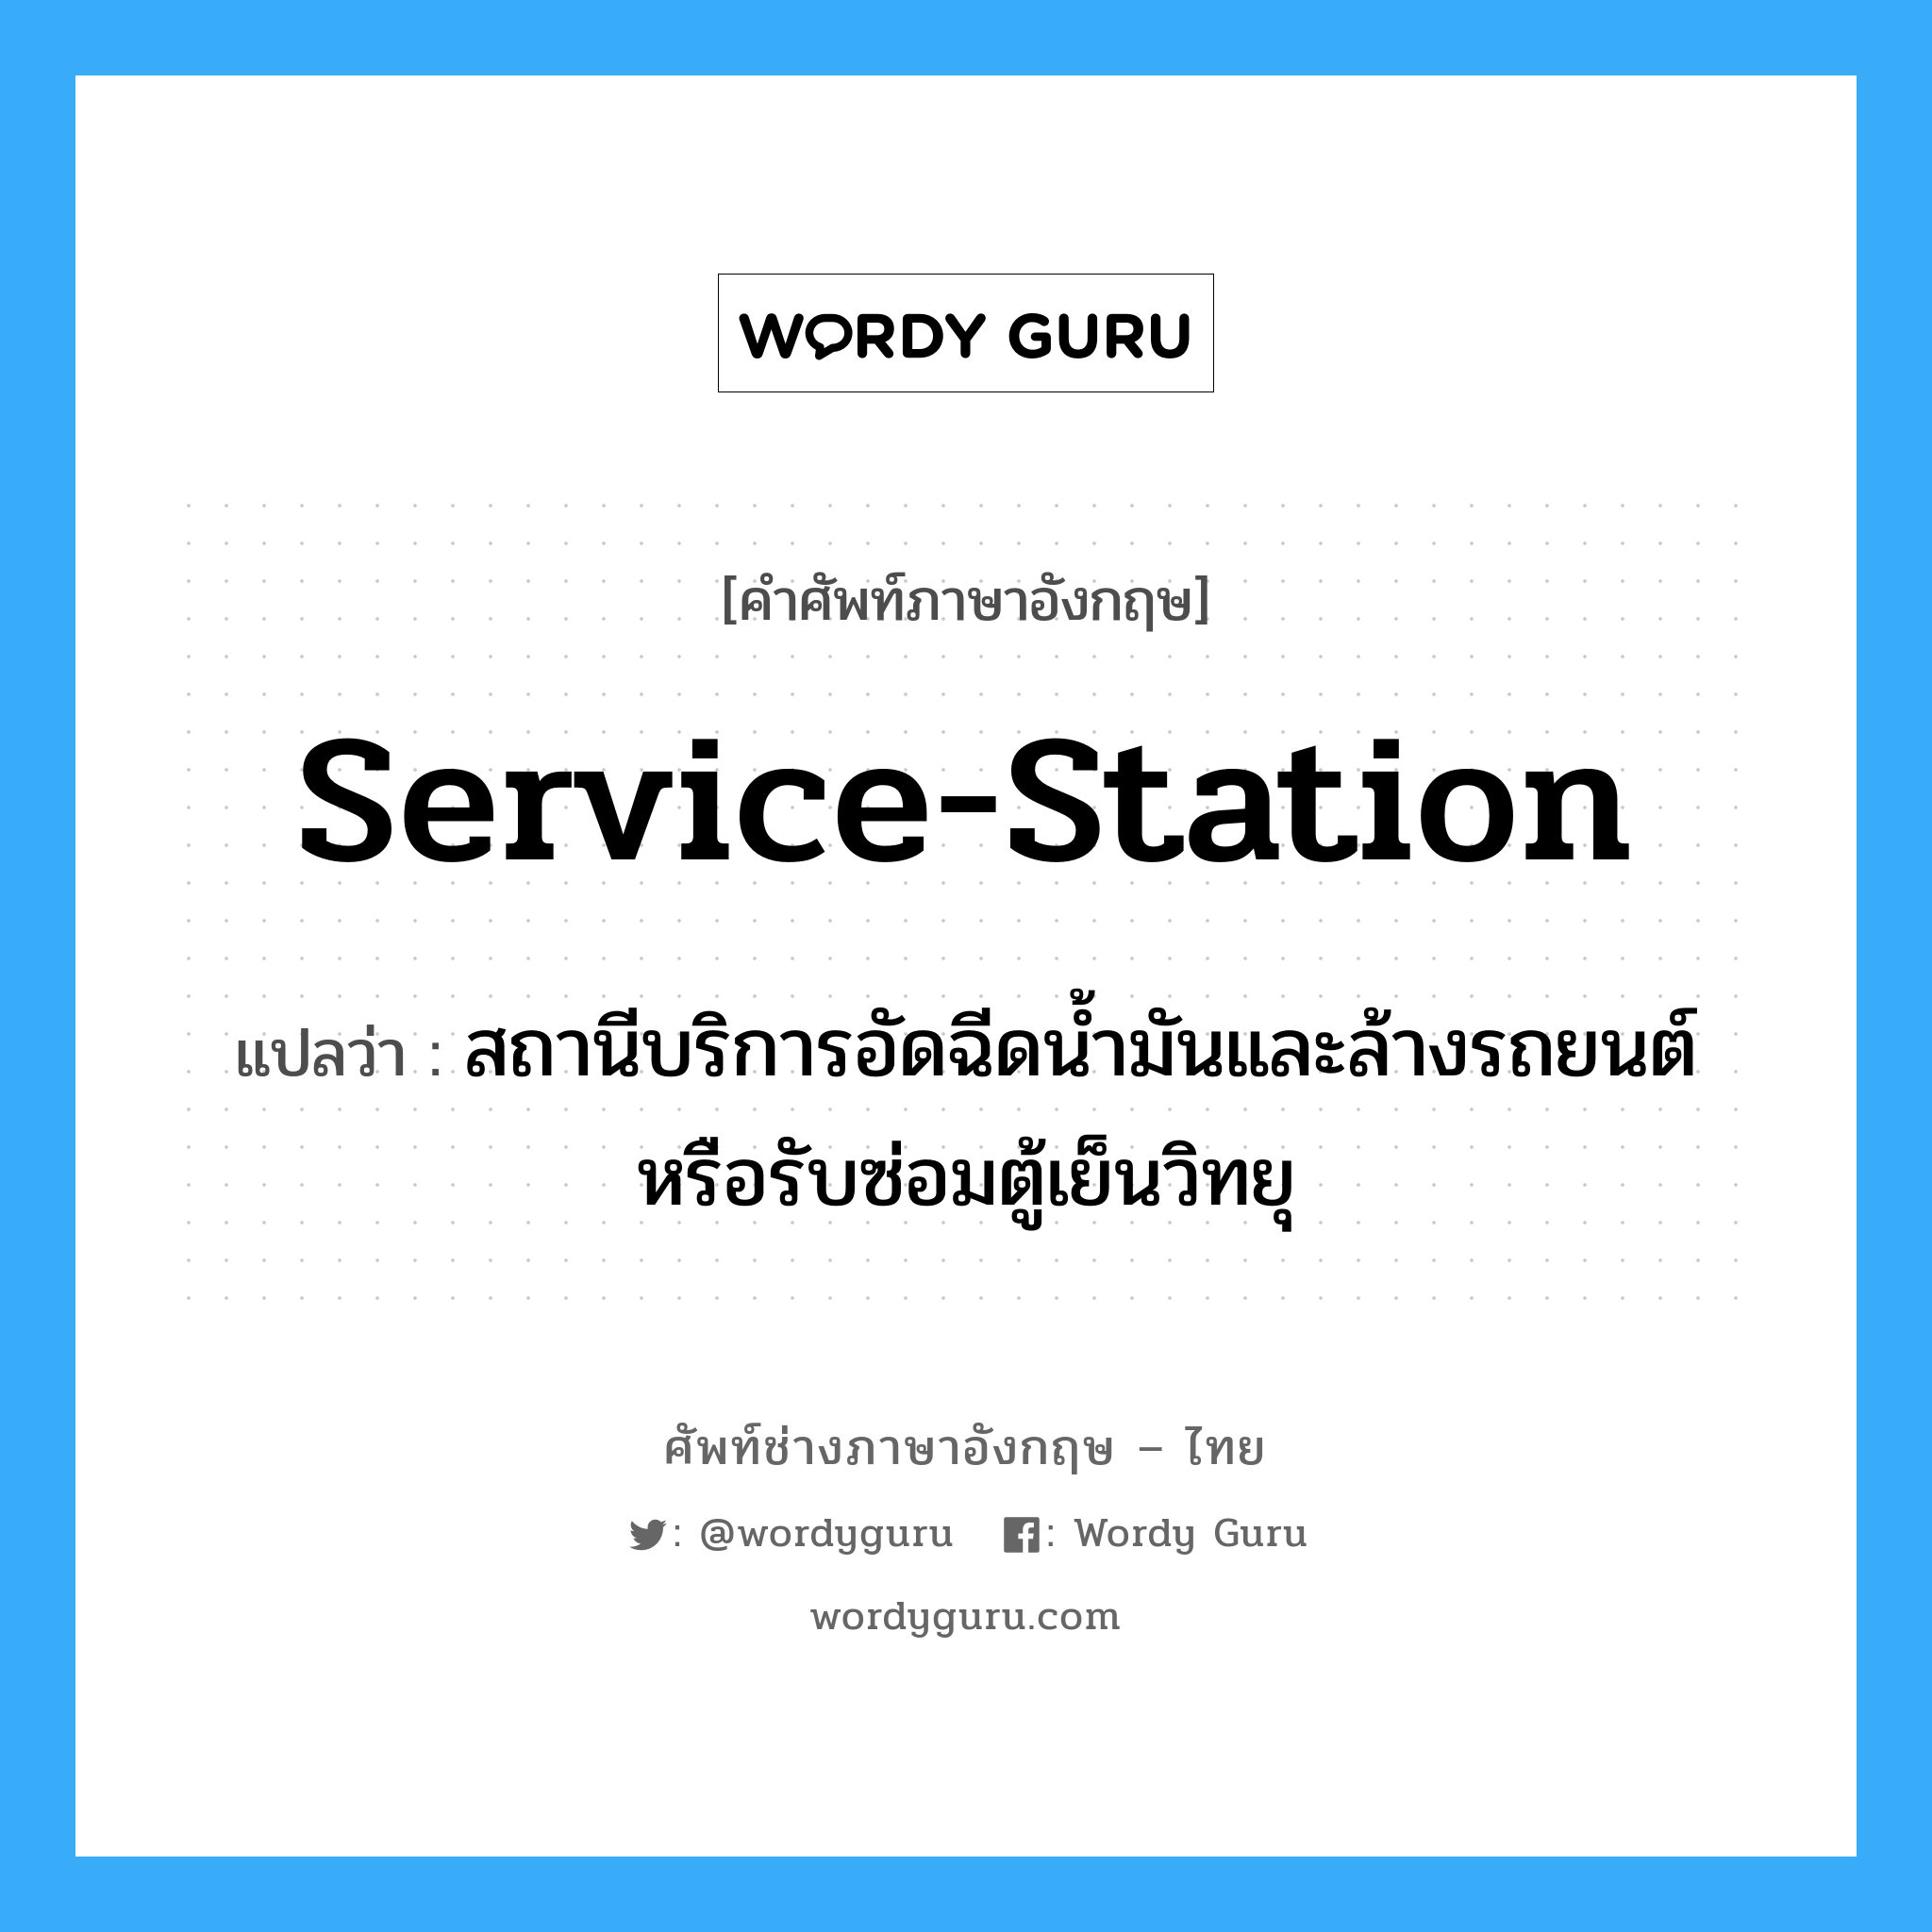 service-station แปลว่า?, คำศัพท์ช่างภาษาอังกฤษ - ไทย service-station คำศัพท์ภาษาอังกฤษ service-station แปลว่า สถานีบริการอัดฉีดน้ำมันและล้างรถยนต์ หรือรับซ่อมตู้เย็นวิทยุ